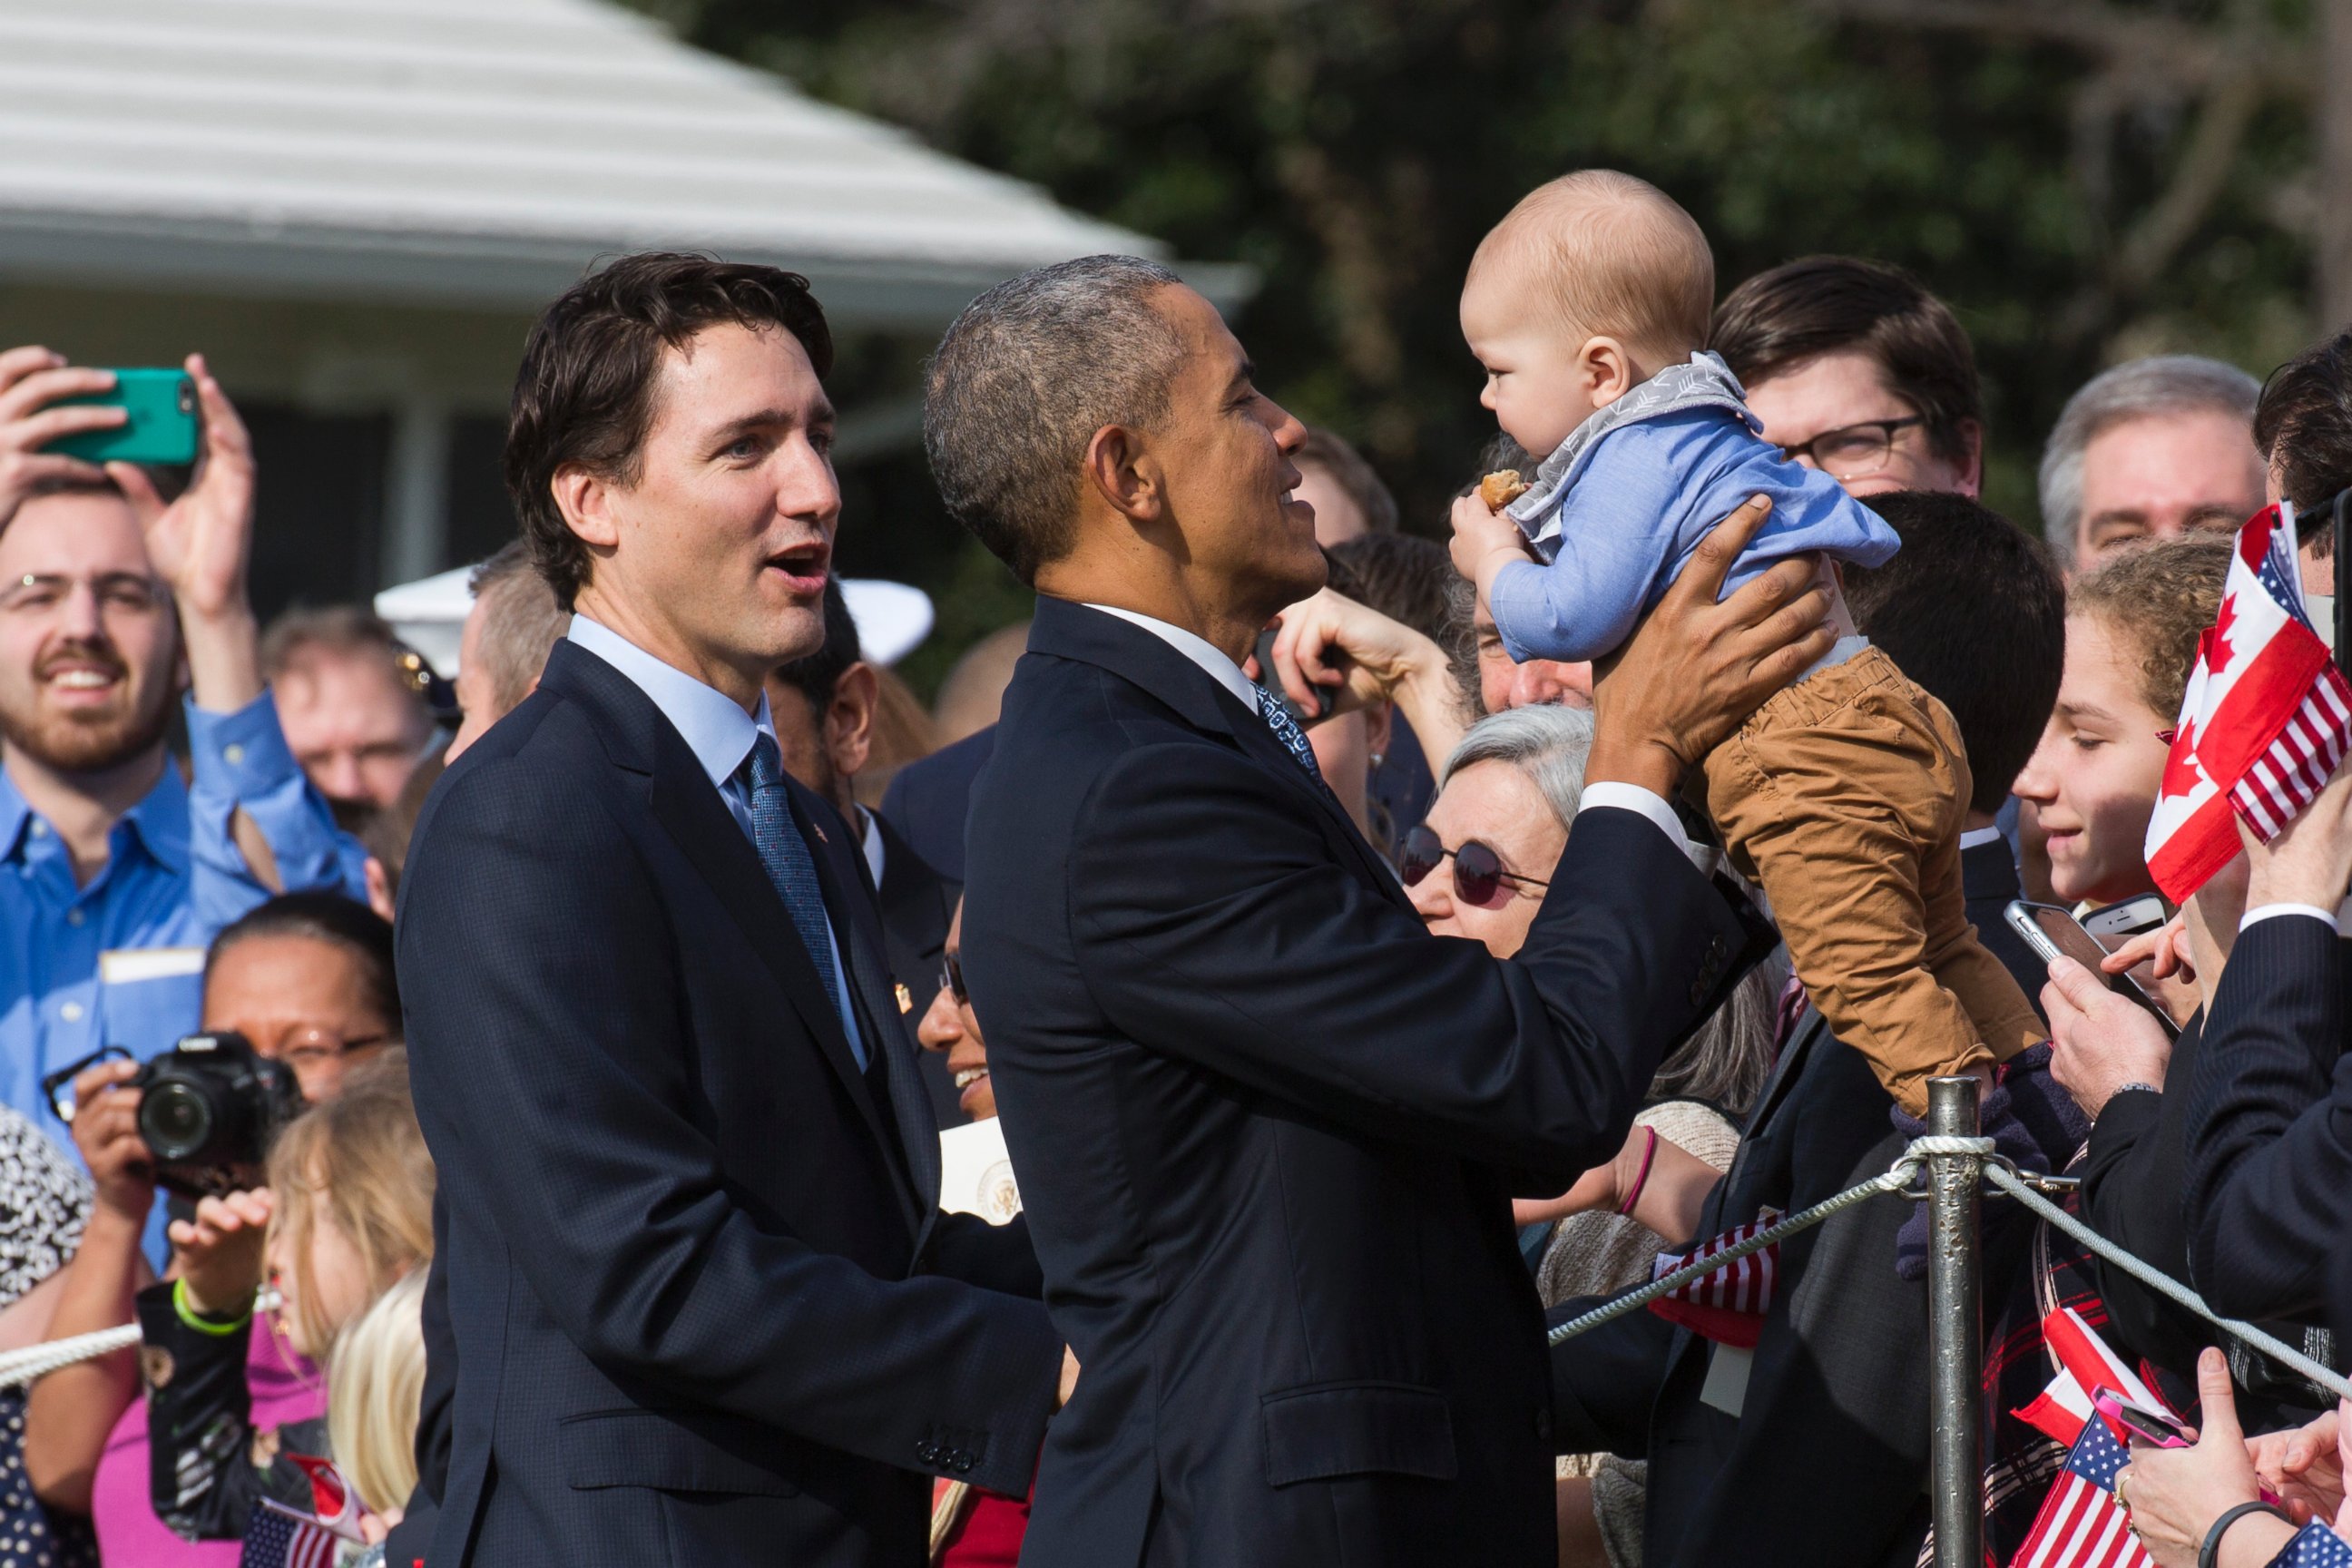 Barack Obama taunts Canadian prime minister over Chicago's Stanley